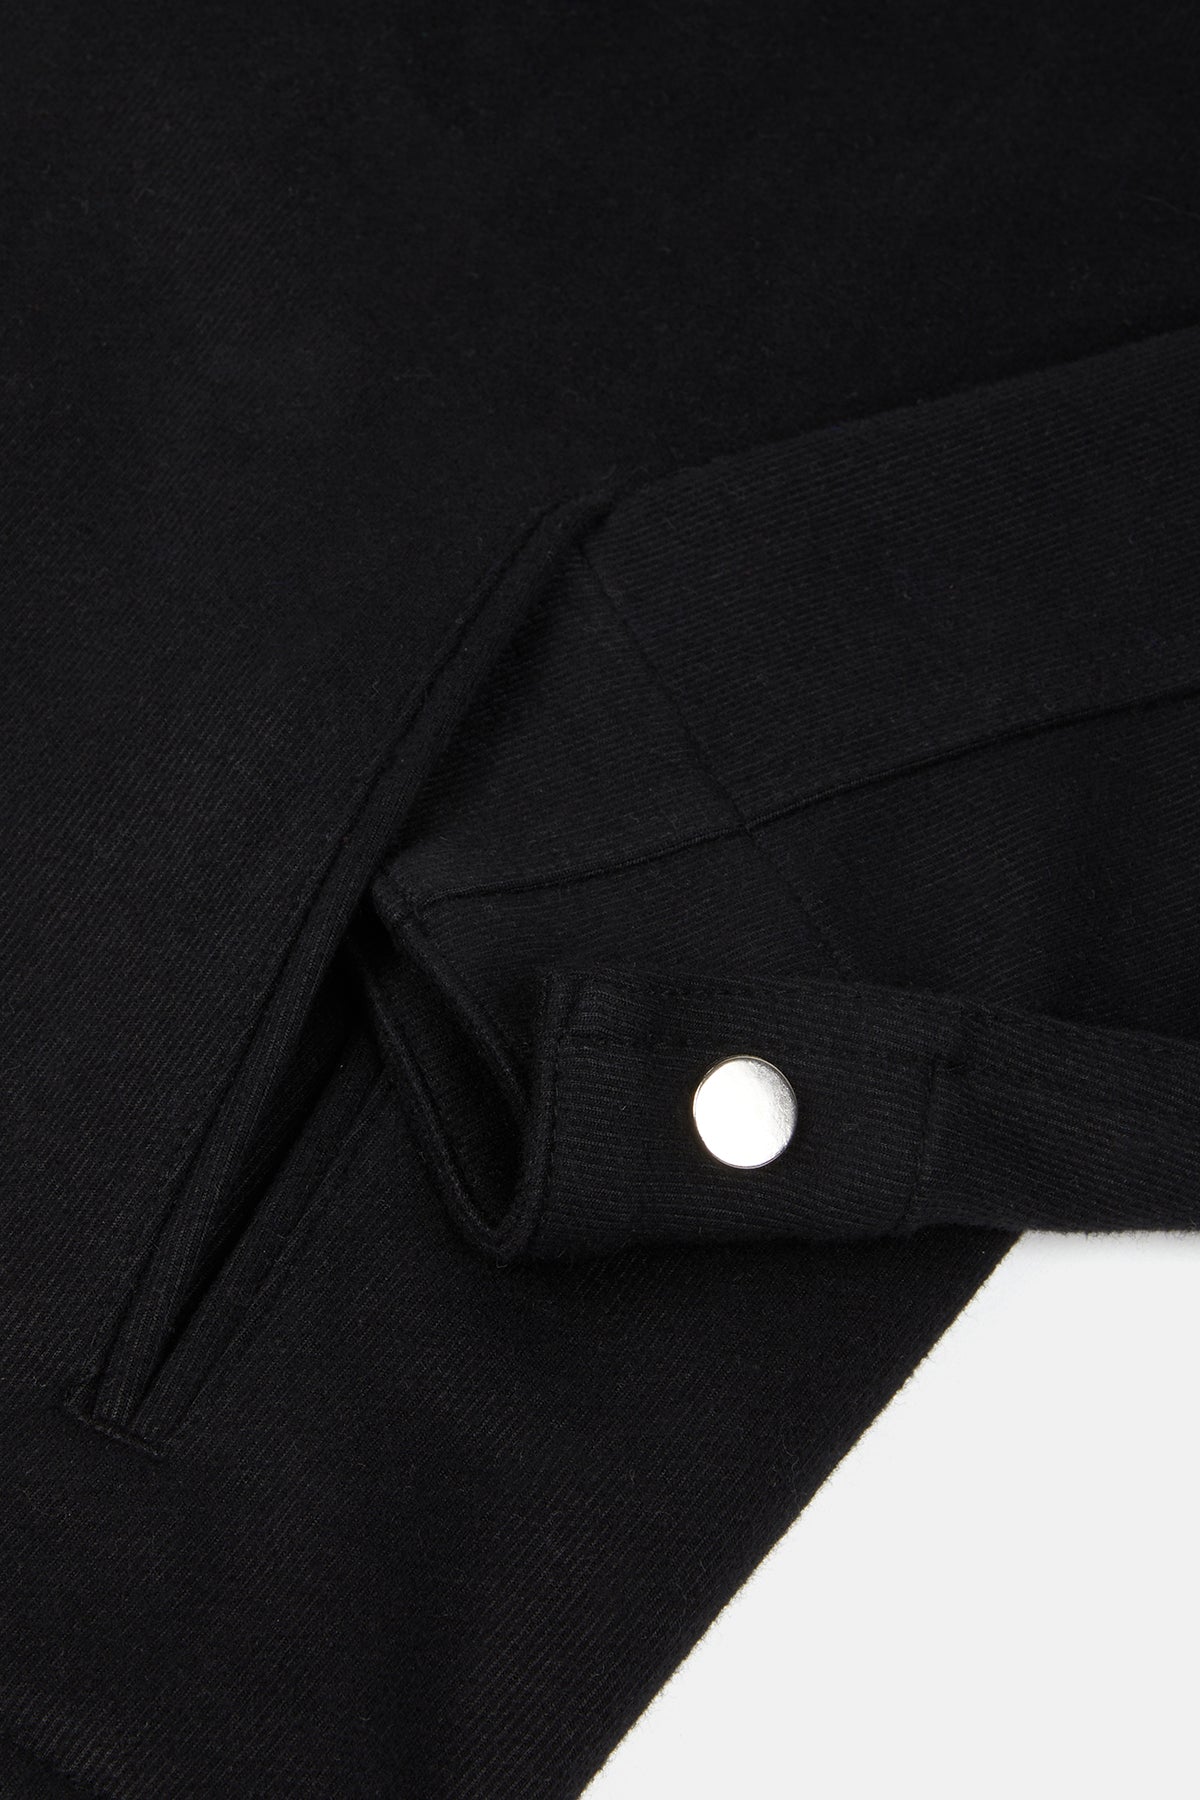 Super Soft Fermuarlı Ceket - Siyah